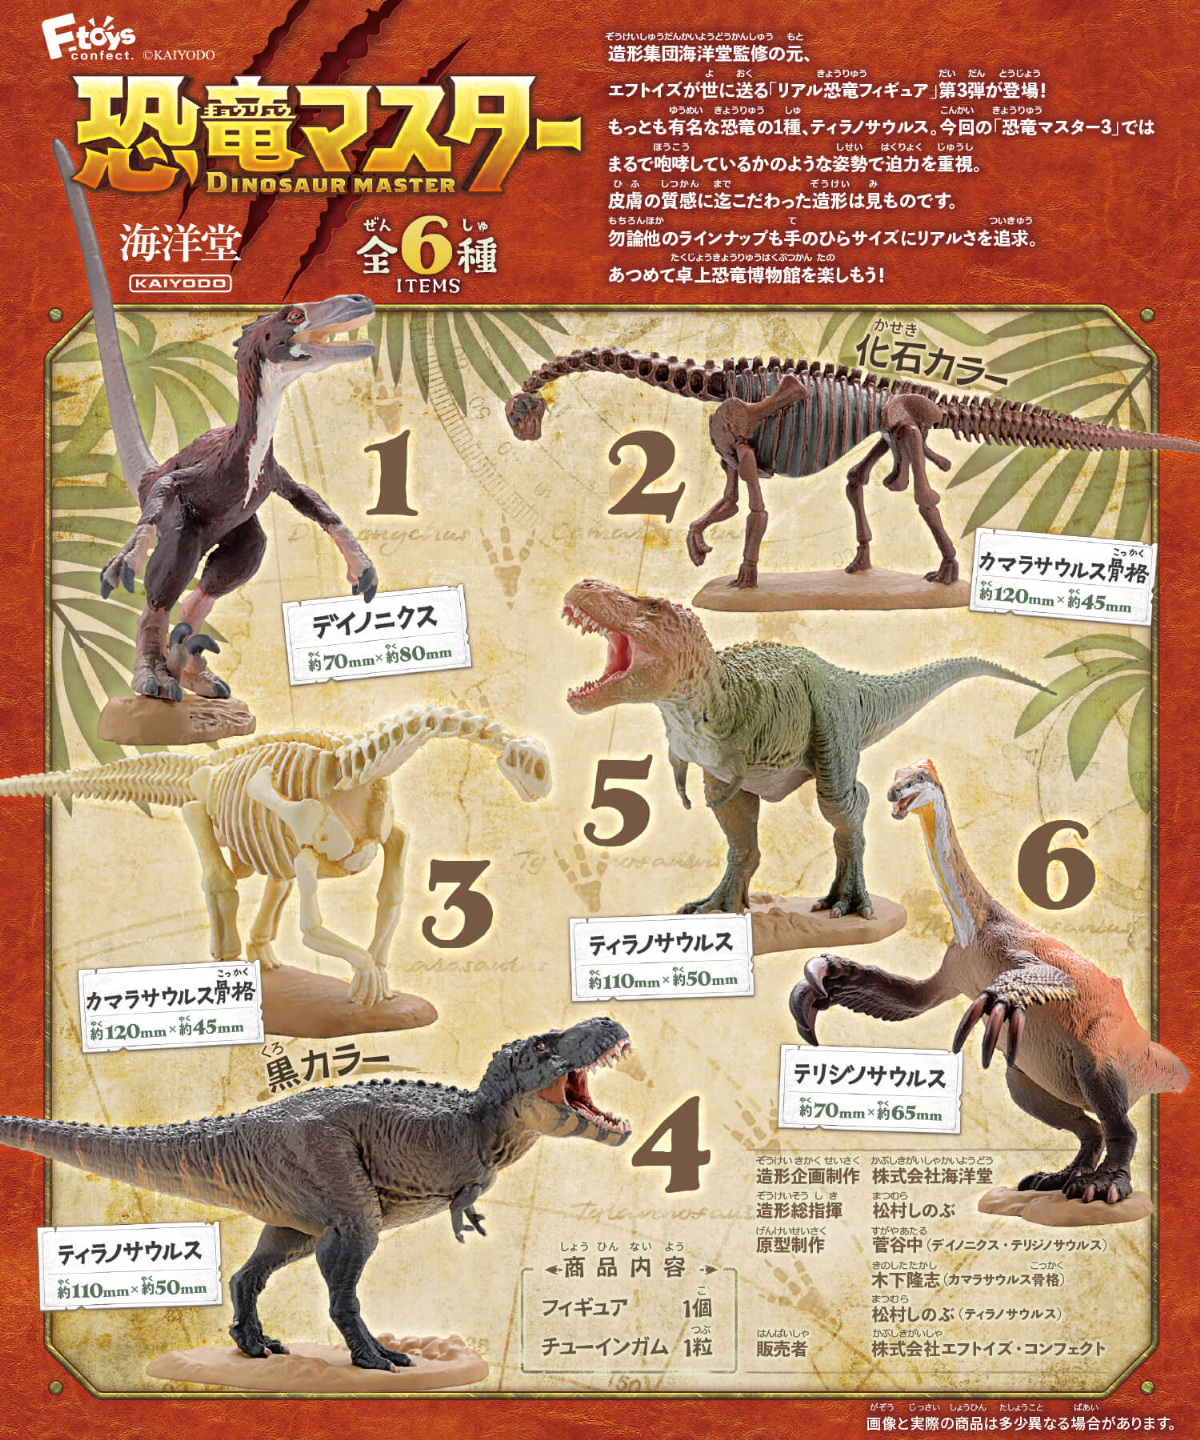 本格恐竜食玩フィギュア「恐竜マスター」第3弾